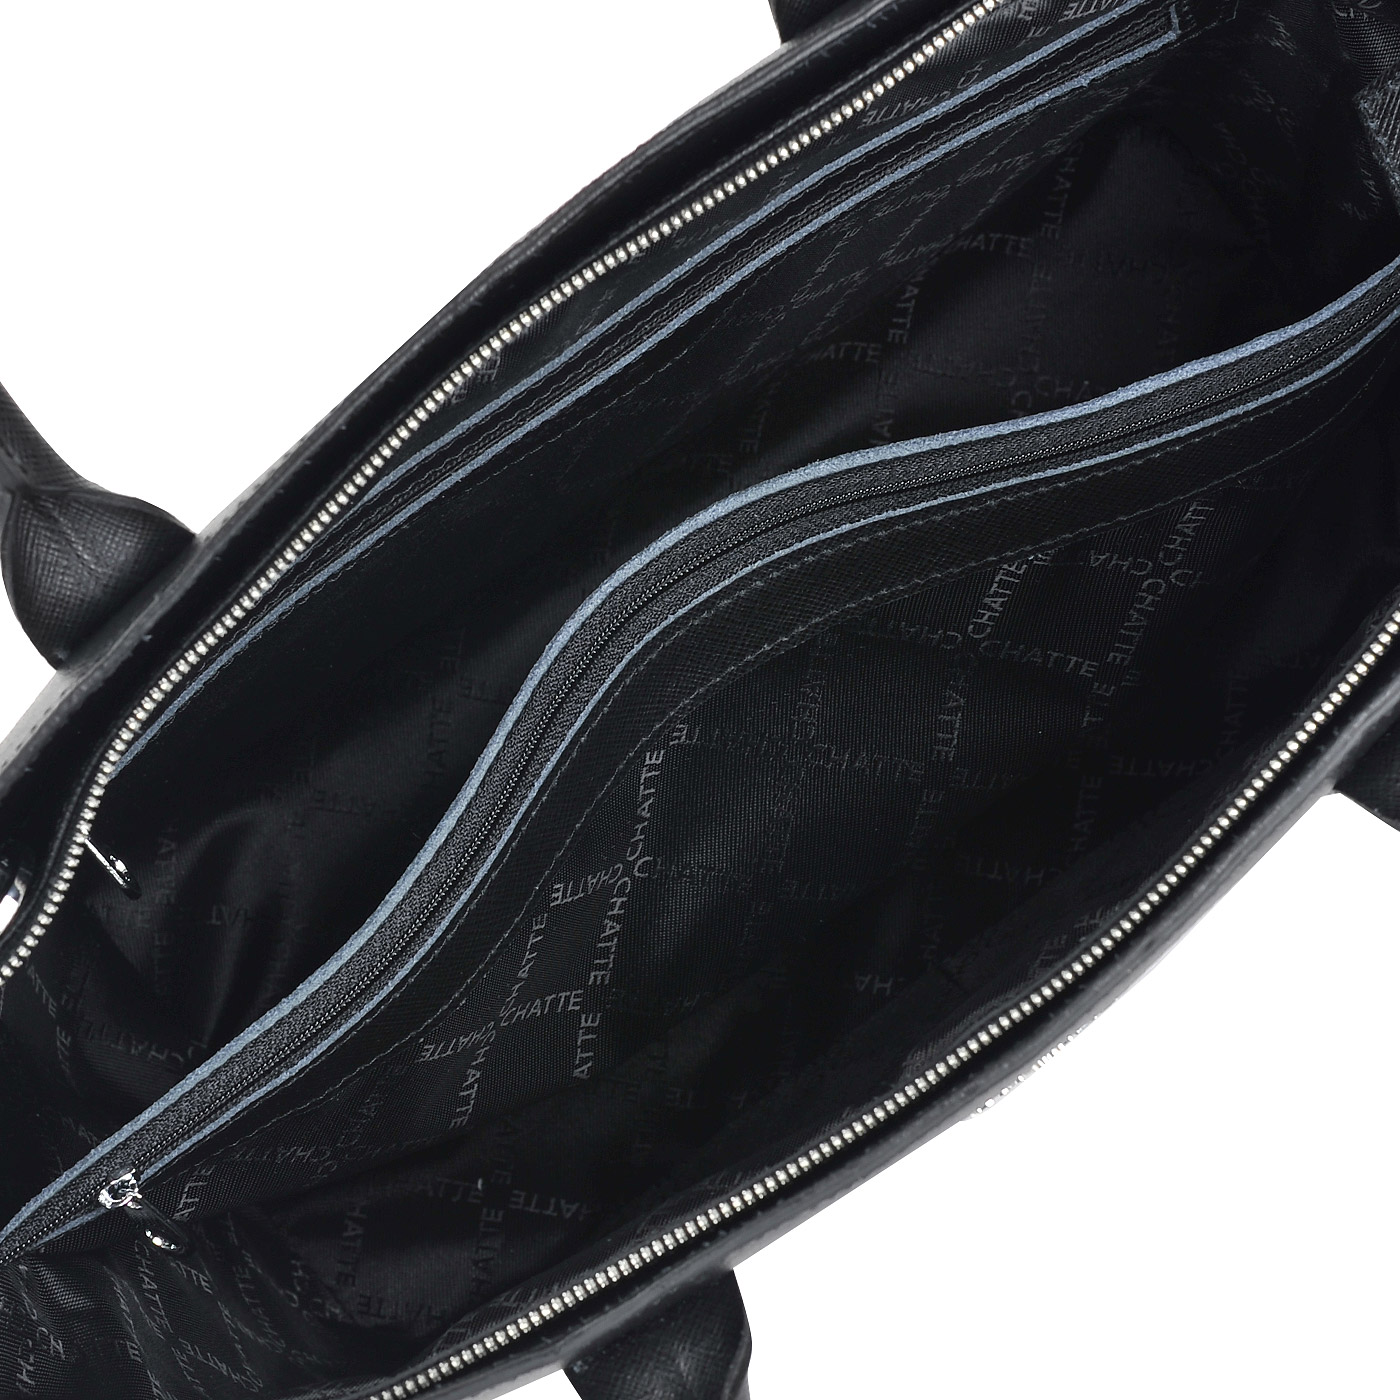 Женская сумка-трапеция из сафьяновой черной кожи с плечевым ремешком Chatte 